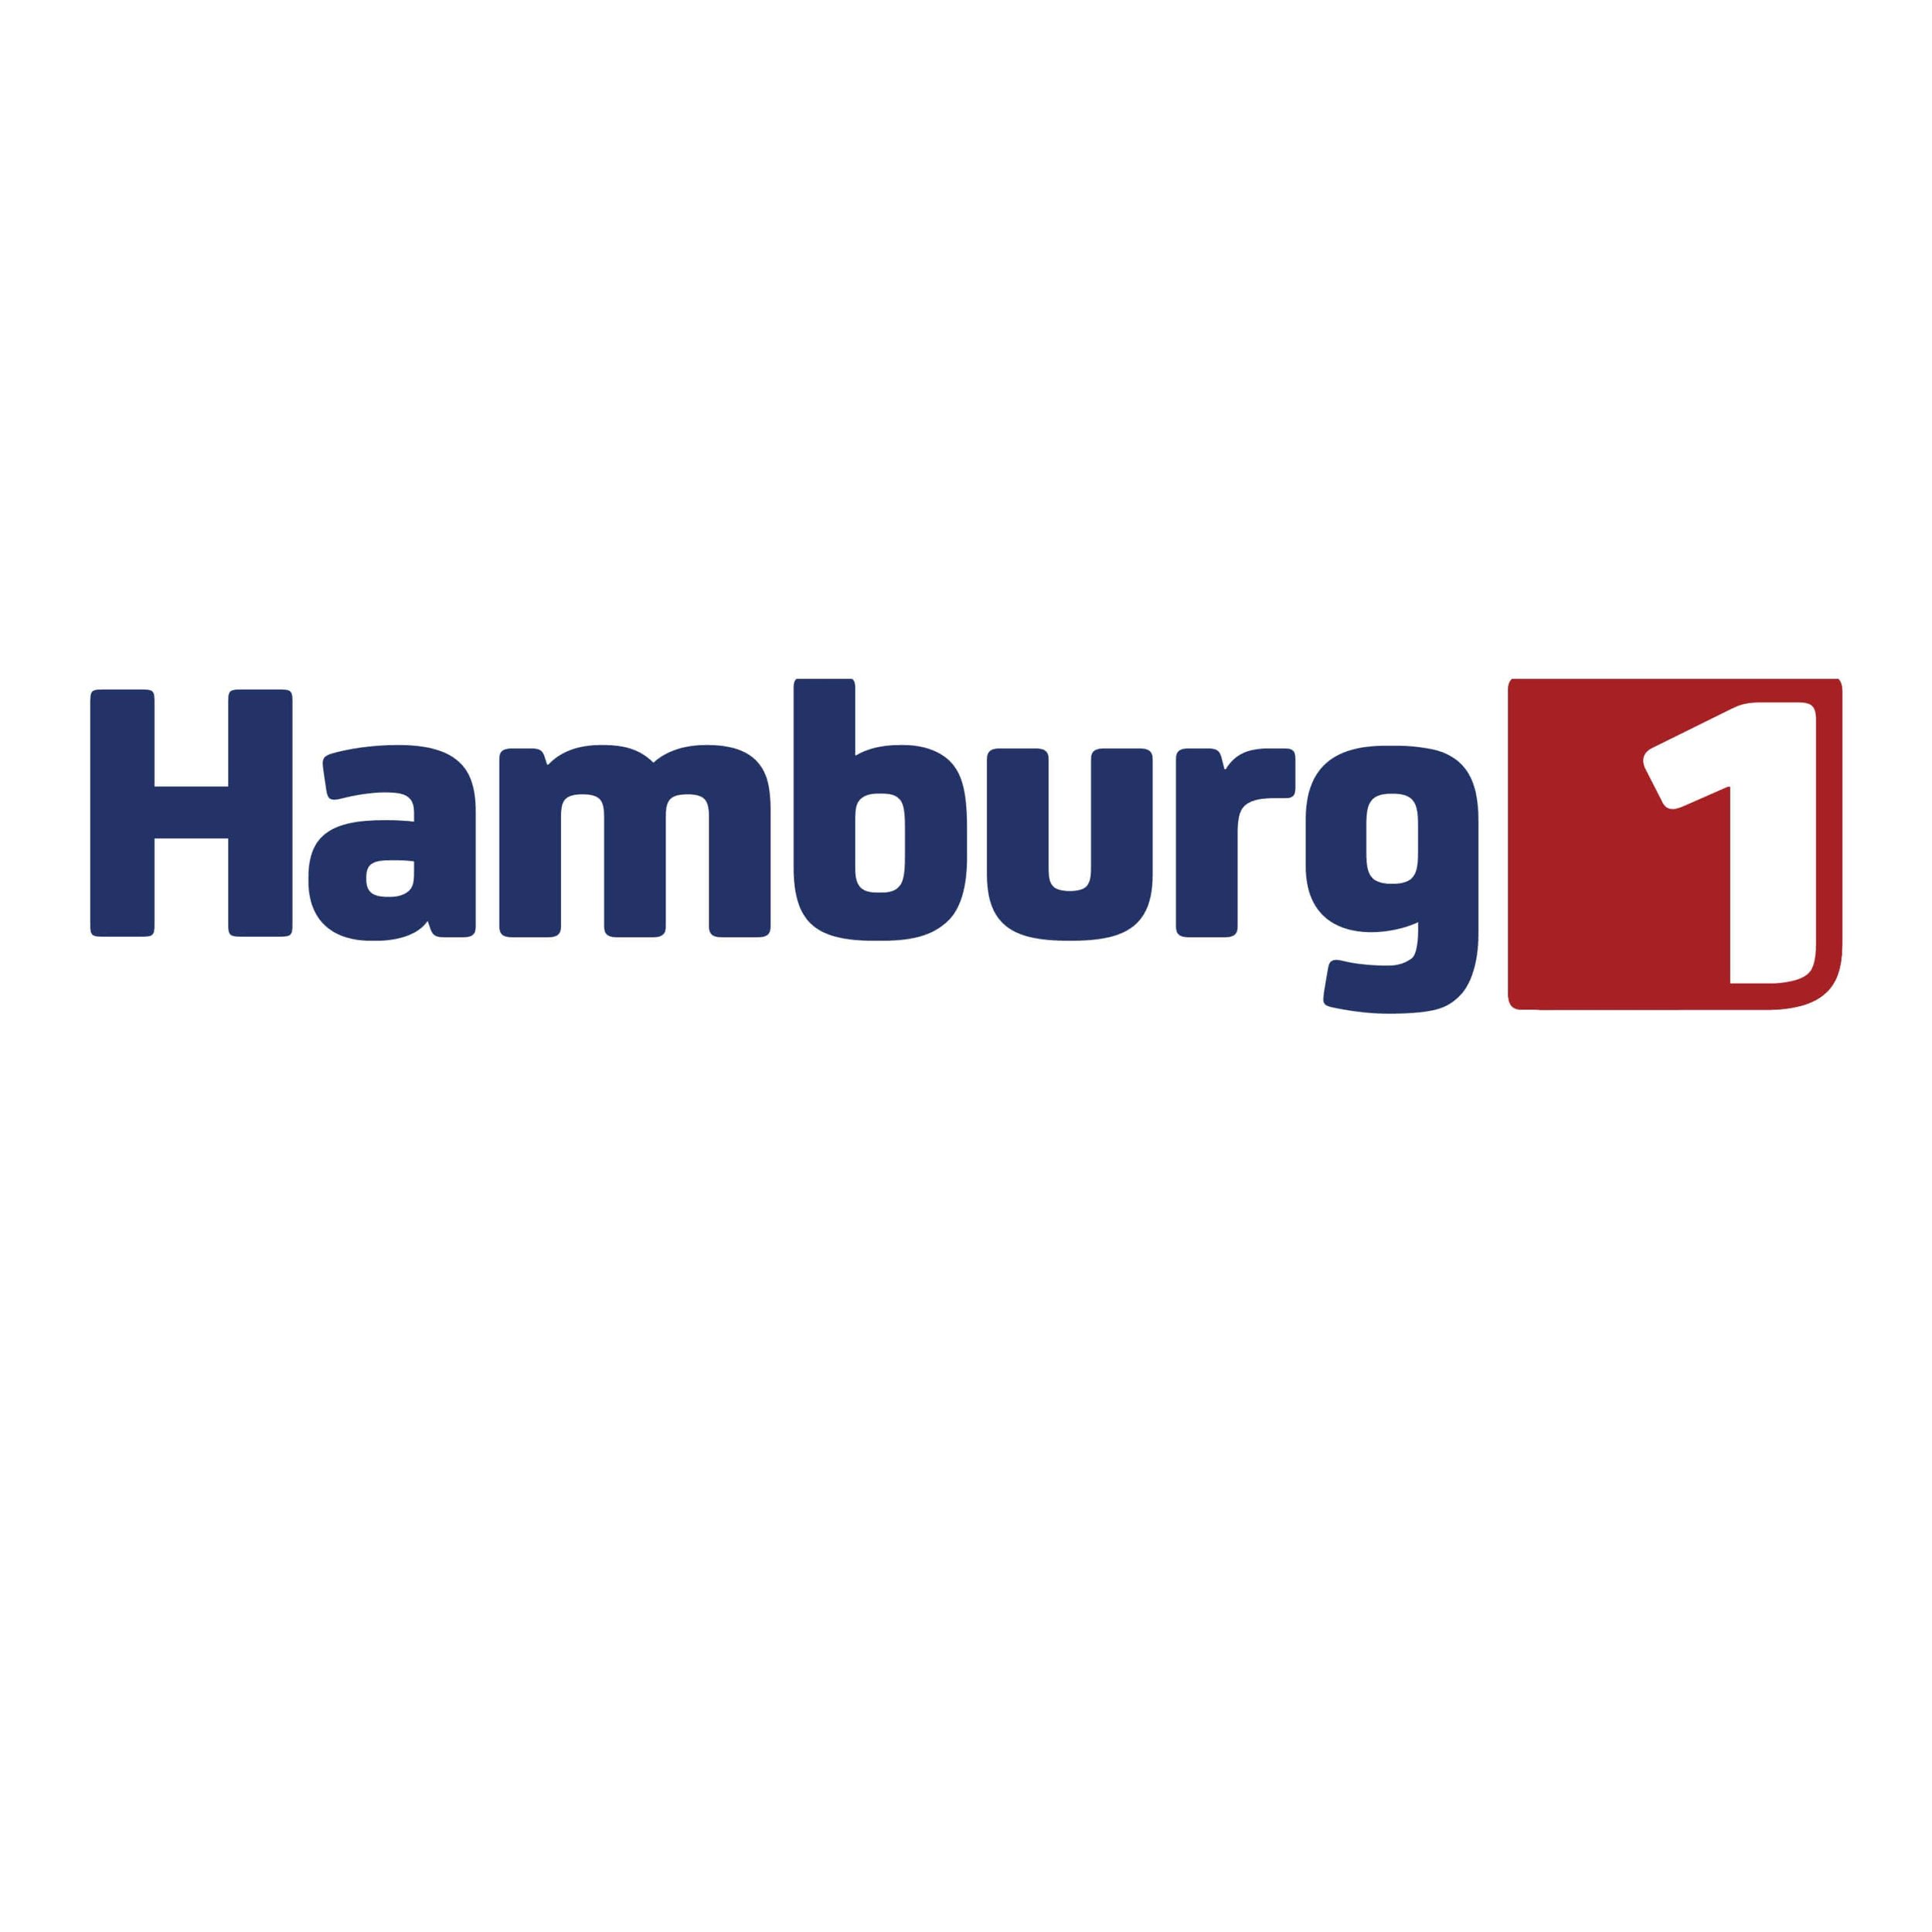 Hamburg 1 (Kopie) (Kopie) (Kopie) (Kopie)